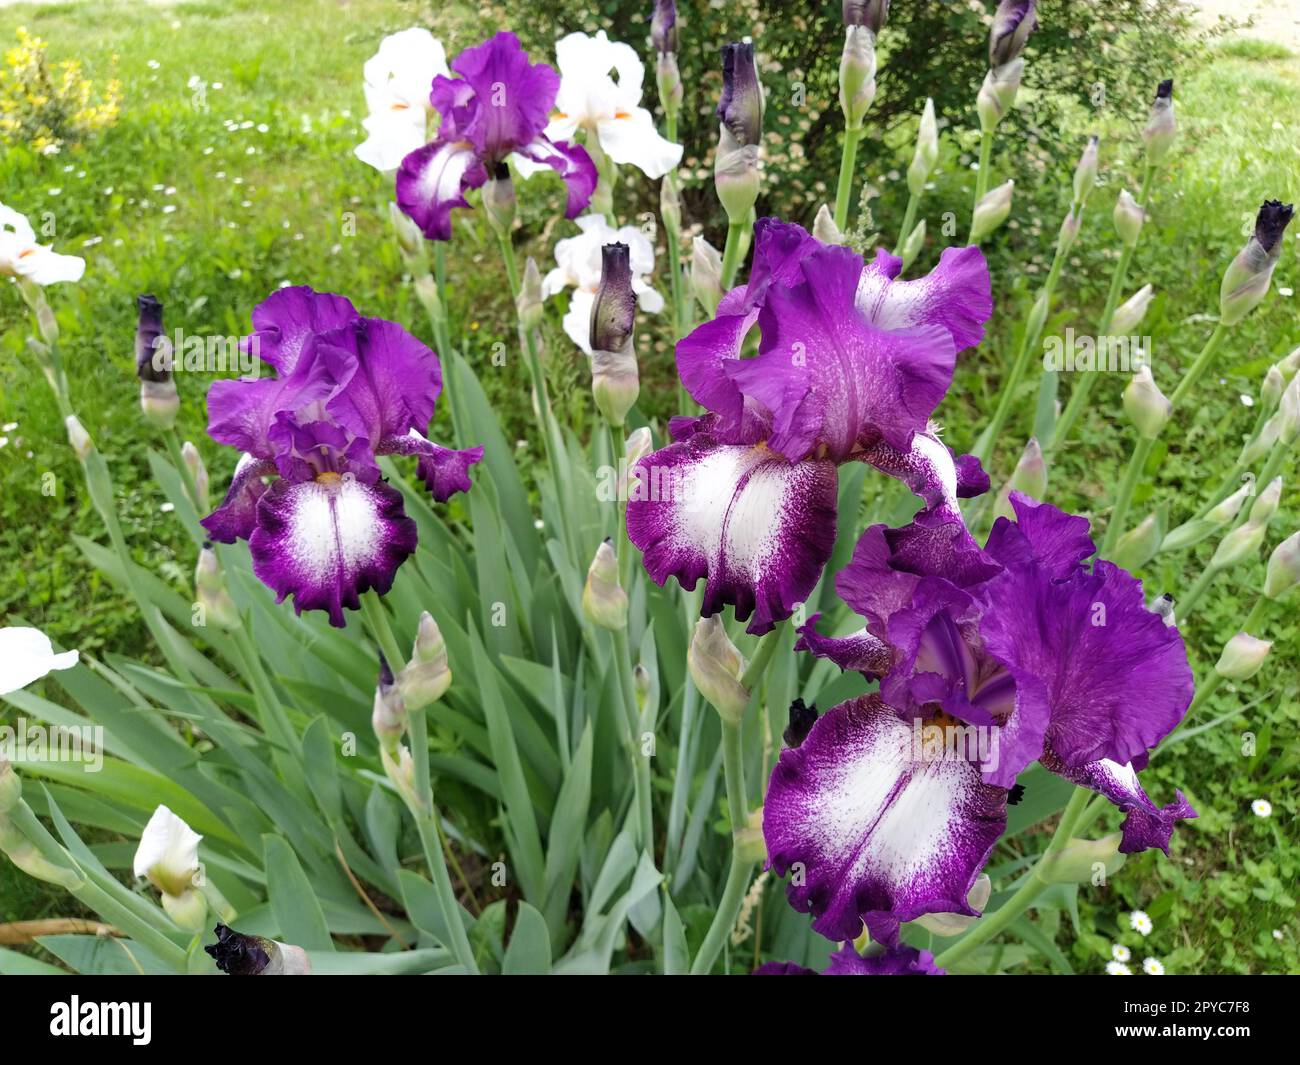 Wunderschöne lila Iris mit einer weißen Mitte. Geschwungene, anmutige, leuchtende Blütenblätter. Grüner unscharfer Hintergrund. Fortpflanzungsgrad der Iris. Große Blütenknospe. Dünne lange Blätter Stockfoto